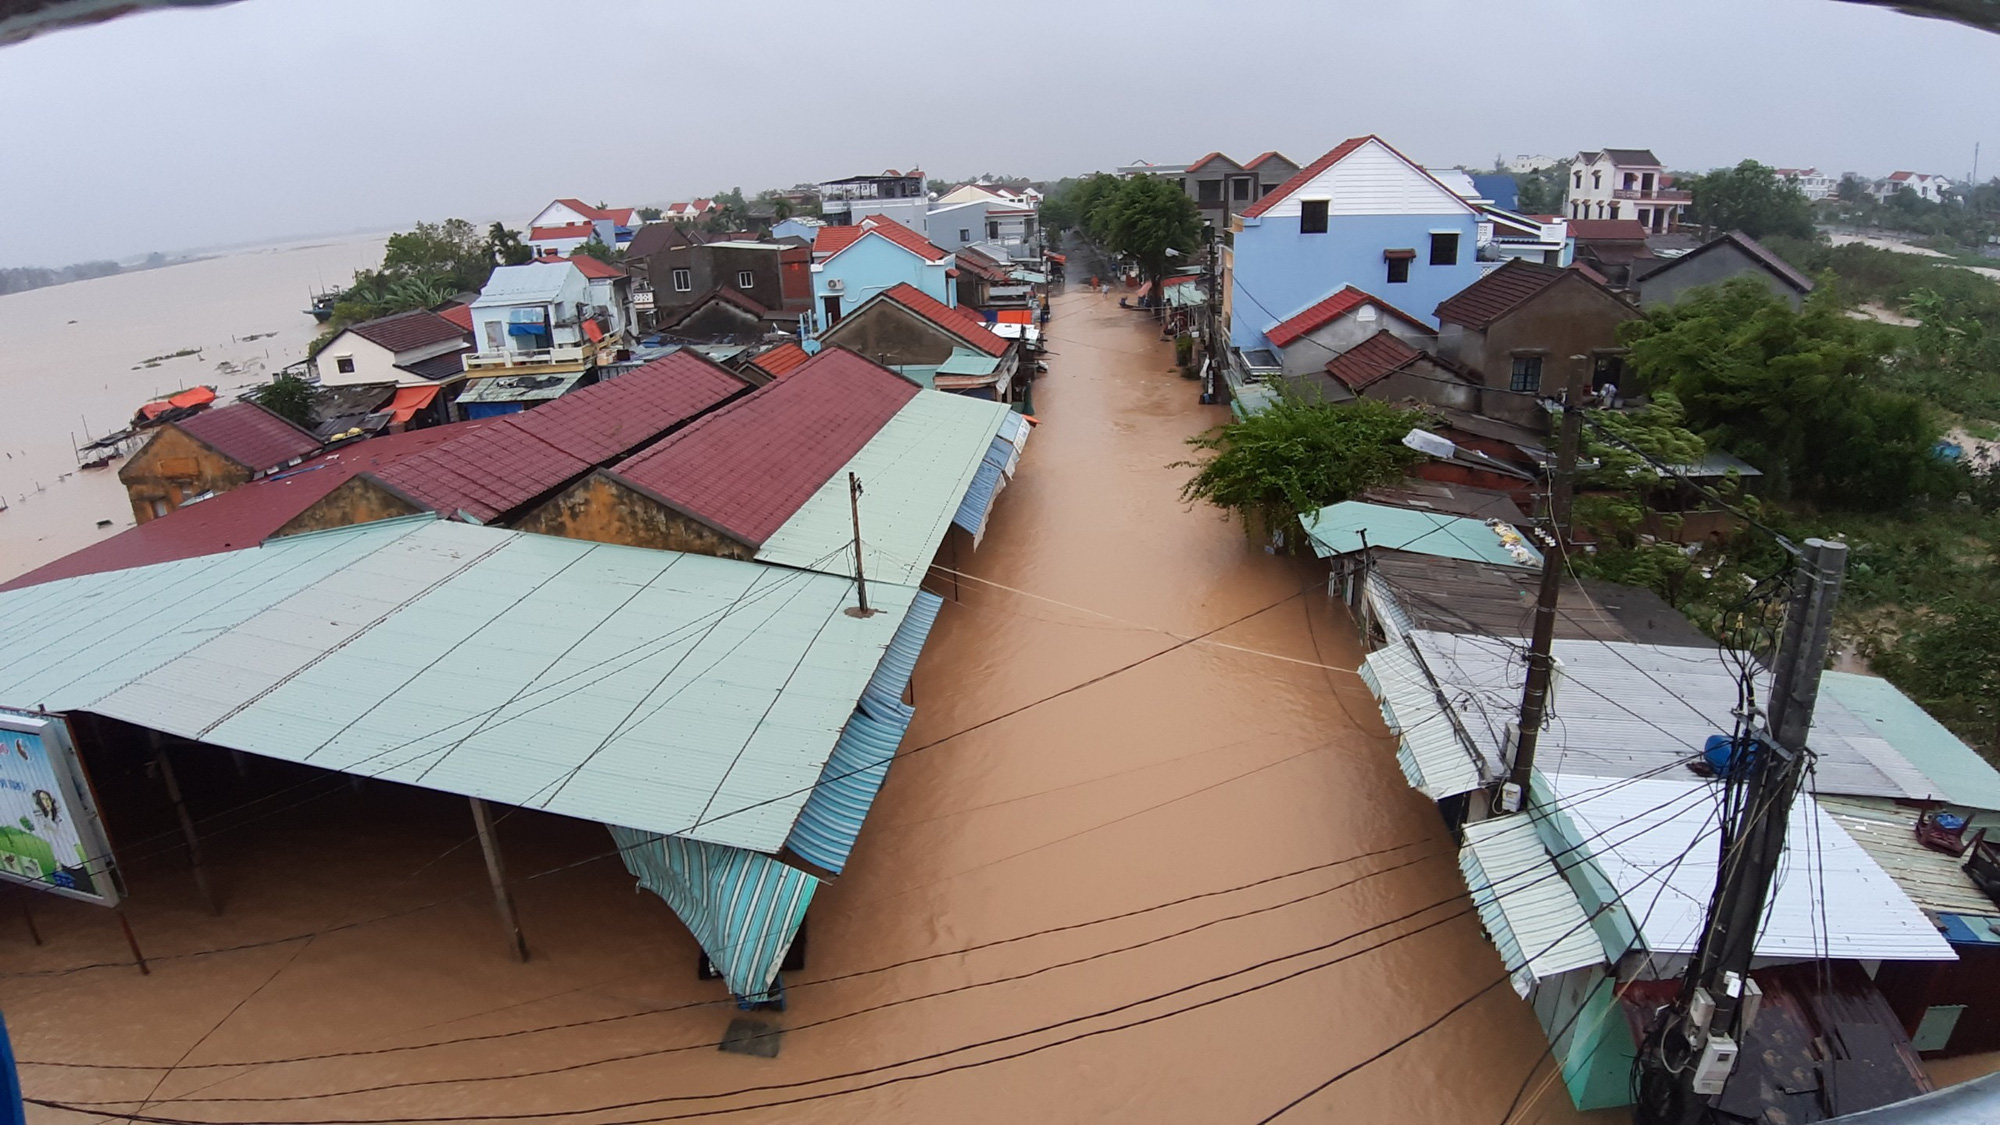 Quảng Nam: Hàng trăm ngôi nhà ở Hội chìm trong biển nước - Ảnh 3.